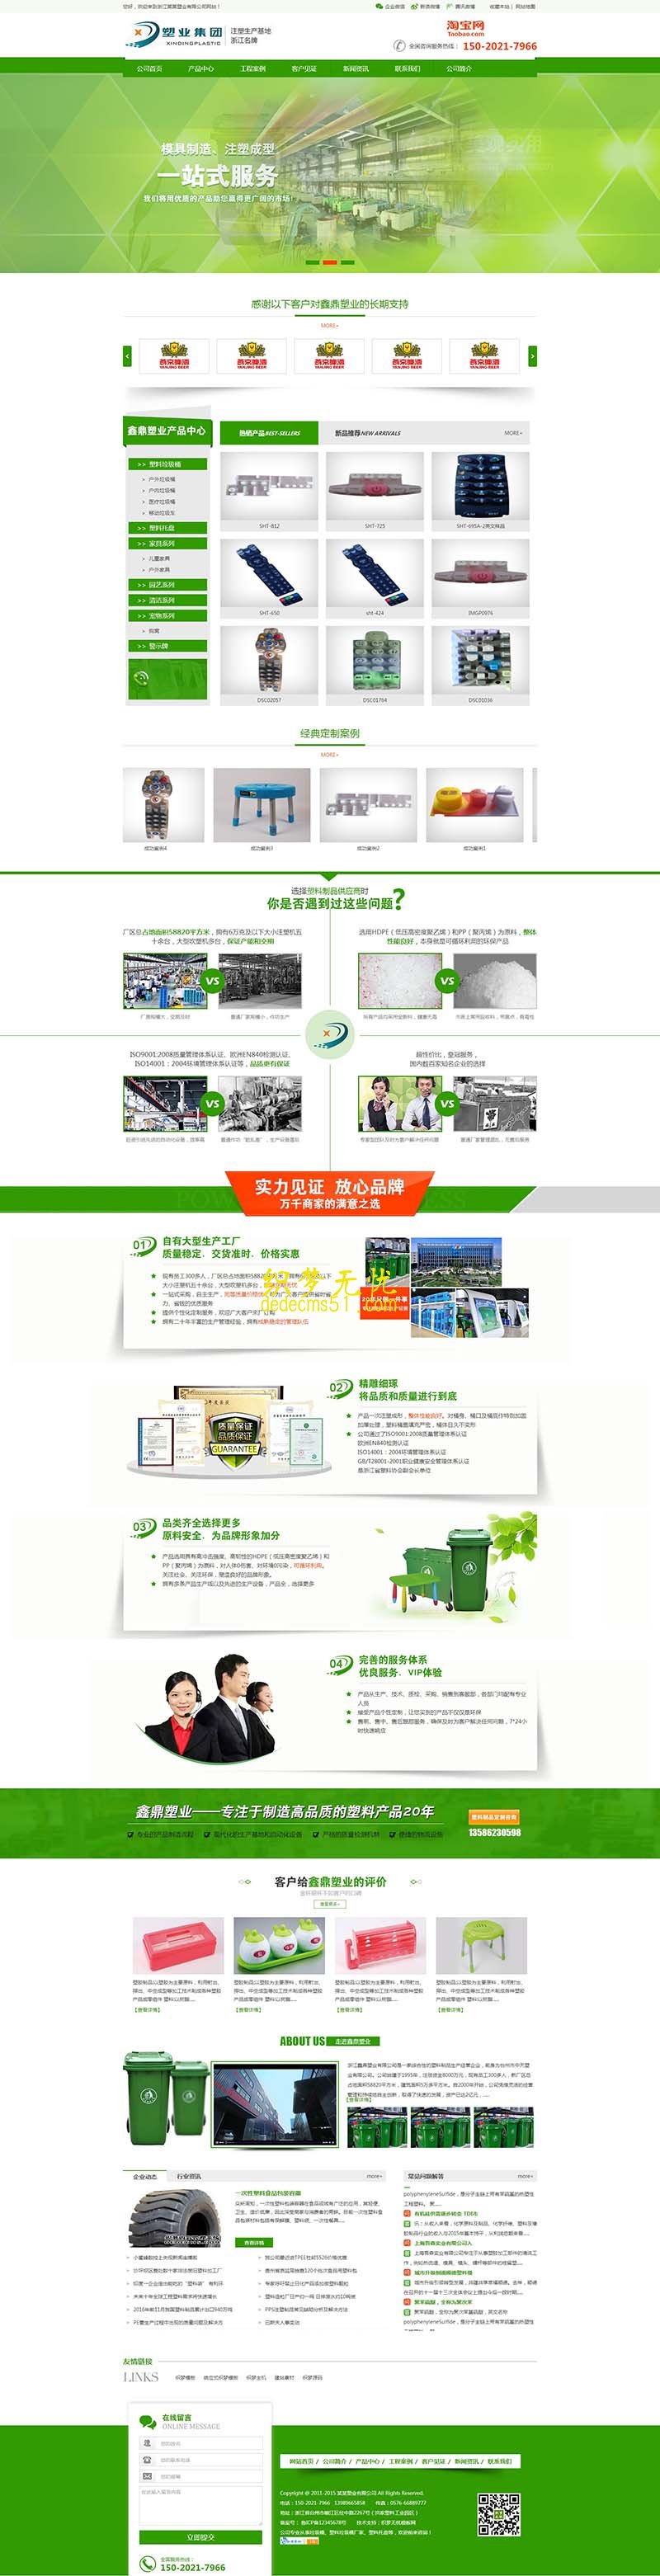 (带手机)绿色营销型塑料制品塑料类网站织梦模板下载